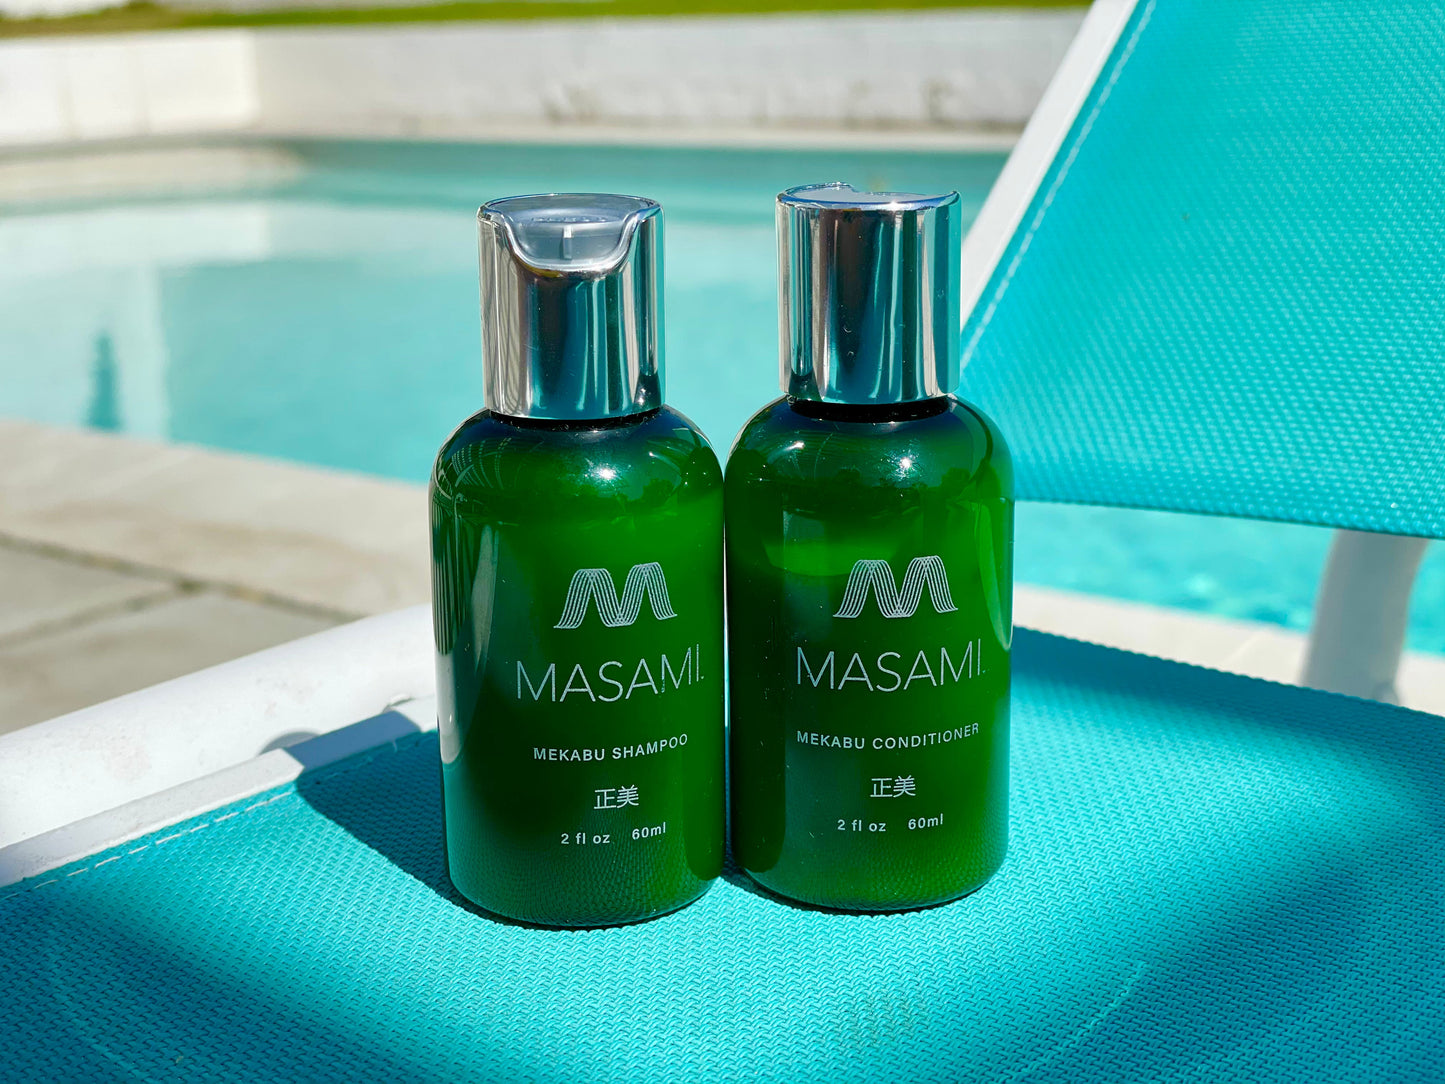 Mekabu Hydrating Travel Shampoo & Conditioner by Masami